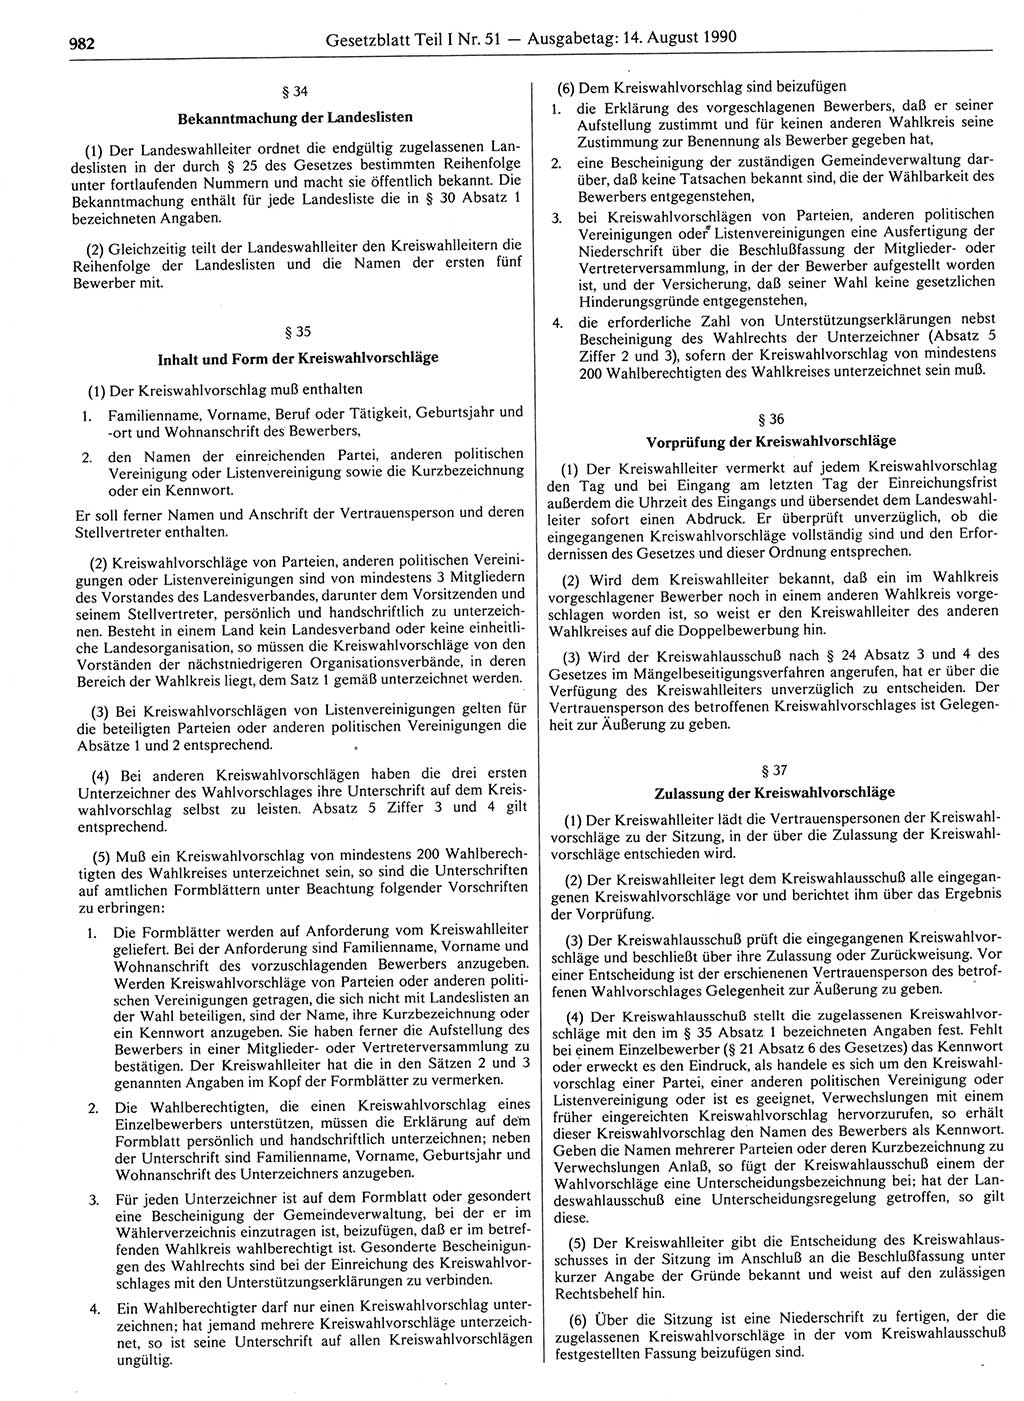 Gesetzblatt (GBl.) der Deutschen Demokratischen Republik (DDR) Teil Ⅰ 1990, Seite 982 (GBl. DDR Ⅰ 1990, S. 982)